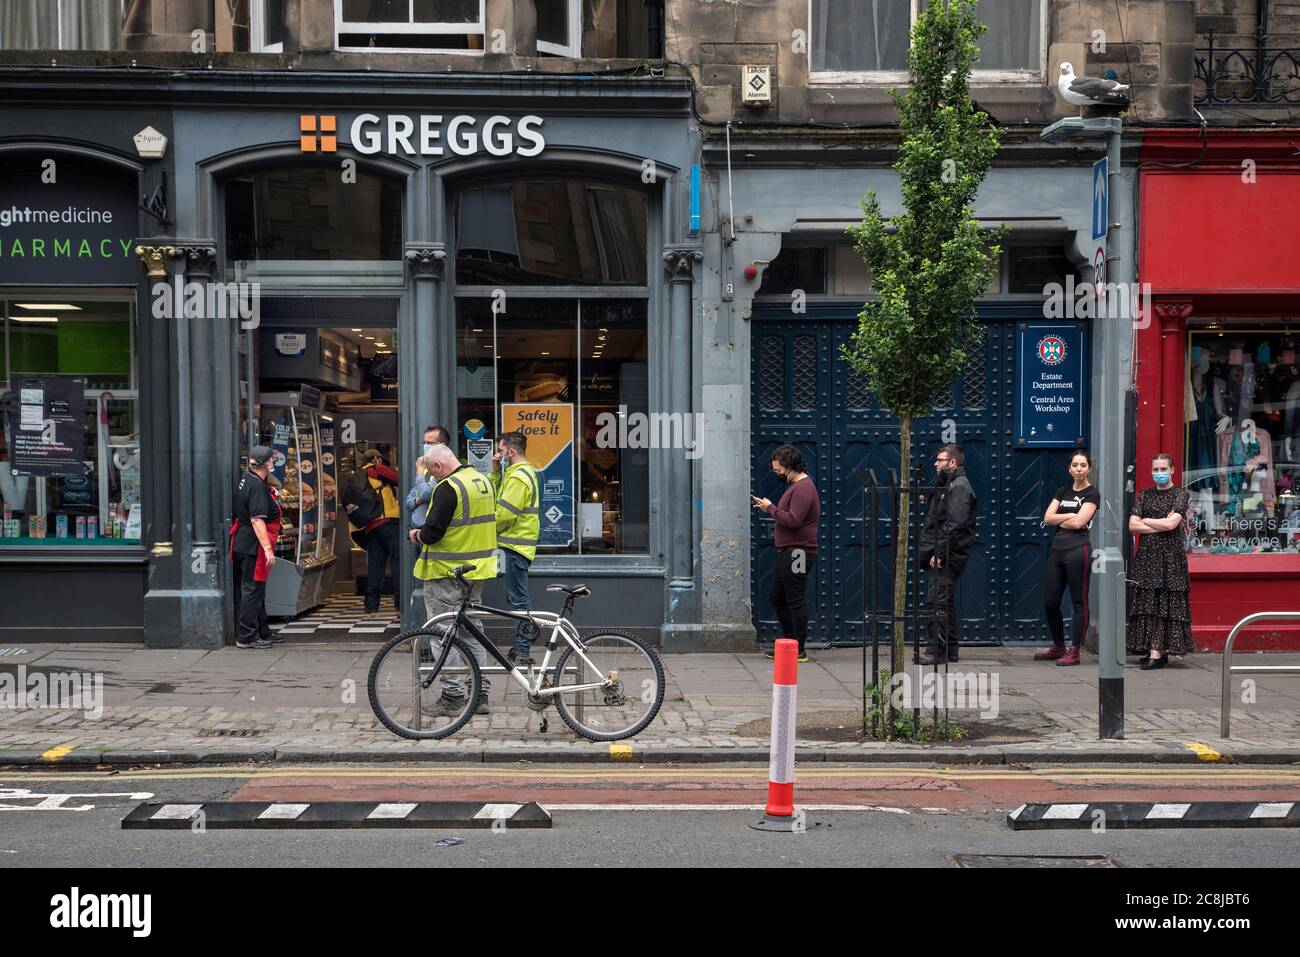 Une file d'attente socialement distancée devant une succursale de Greggs les boulangers à l'époque de Covid-19 à Forrest Road, Édimbourg, Écosse, Royaume-Uni. Banque D'Images